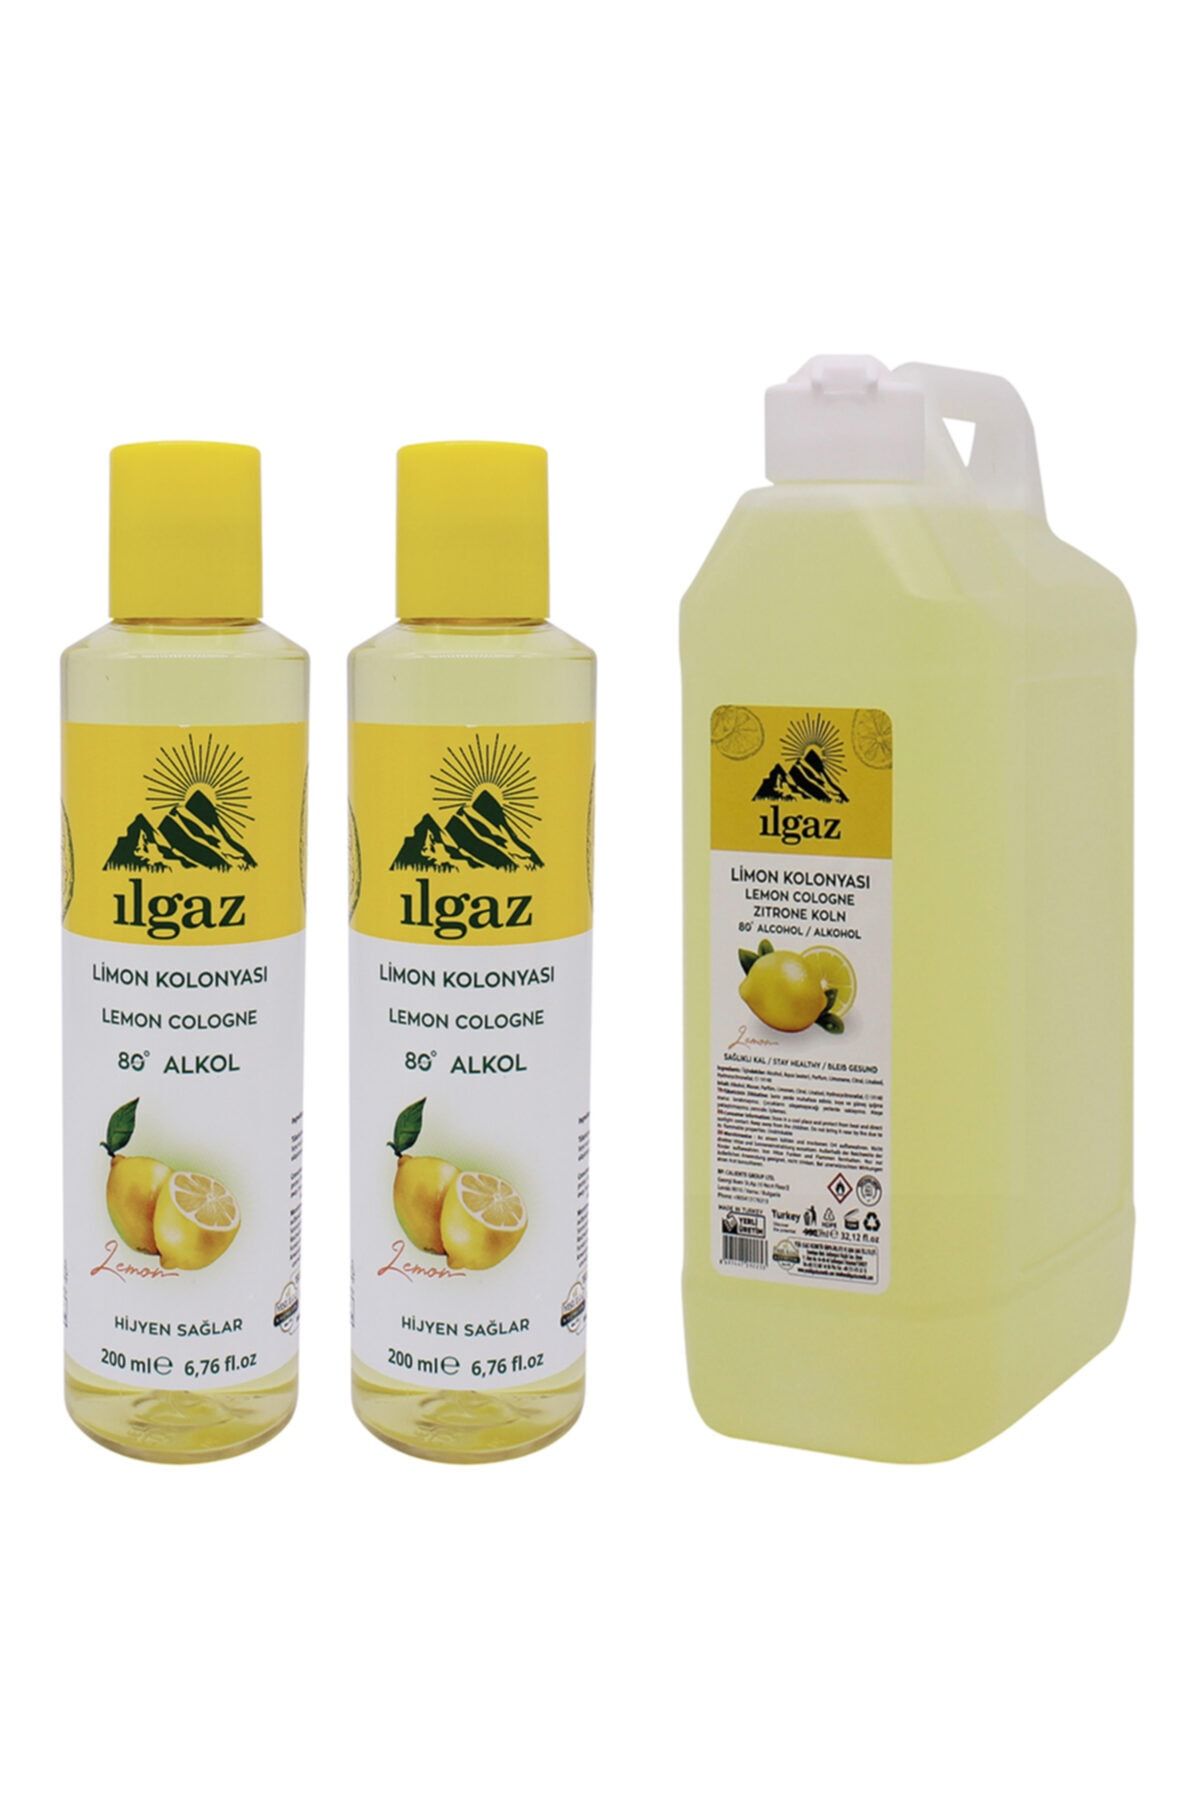 ILGAZ Klasik Limon Kolonyası 2 X 200 ml + 1000 ml Bidon Limon Kolonyası Doldurulabilir Huni Kapak Kolonya